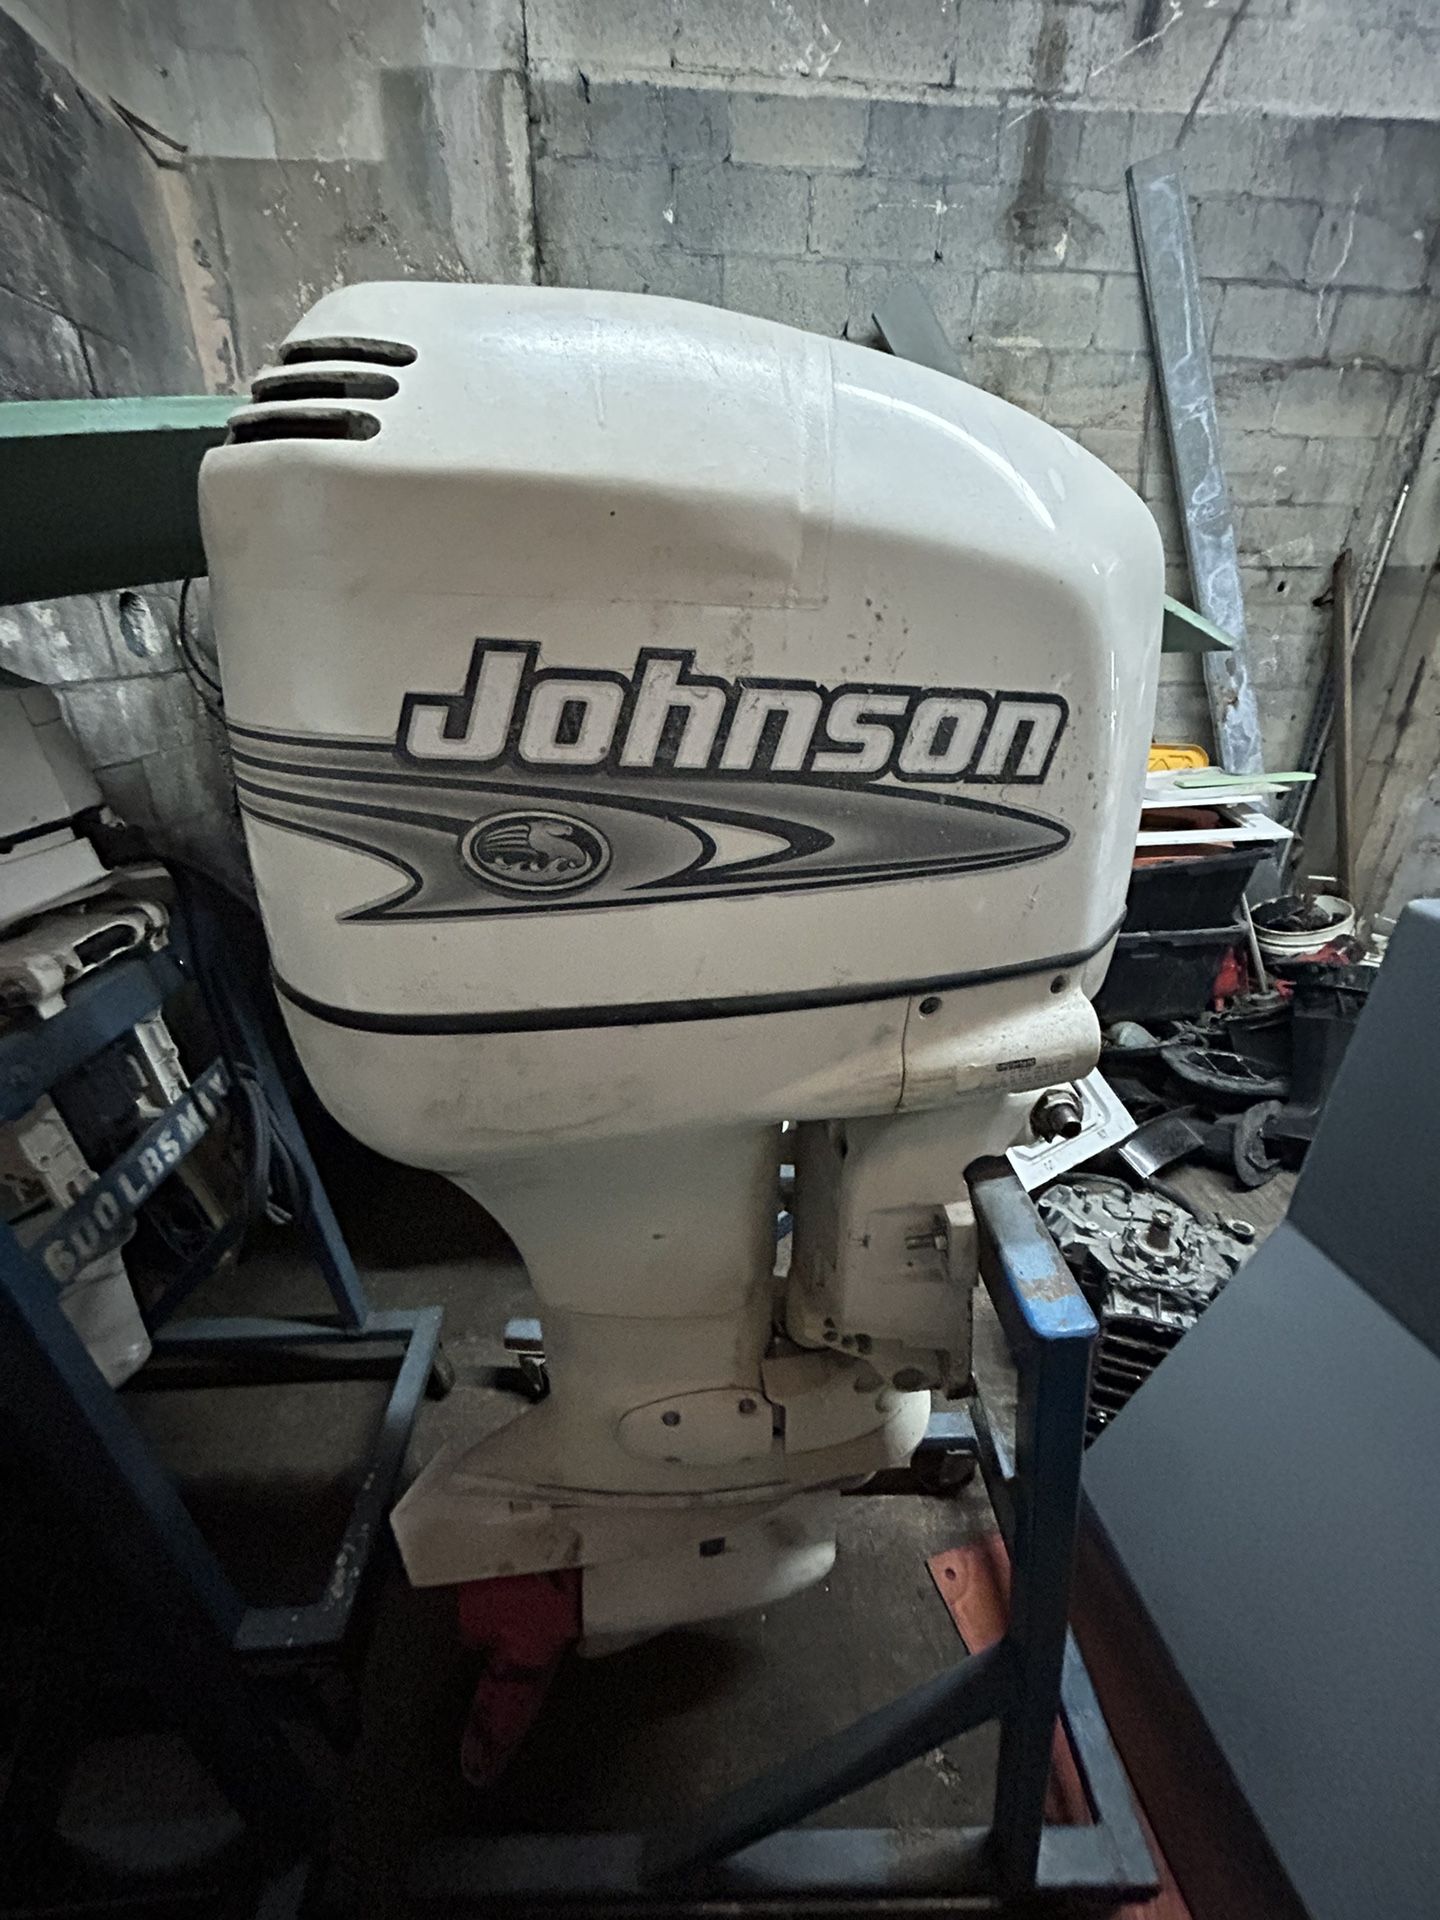 2001 Johnson 150 HP Outboard 2 Stroke Motor